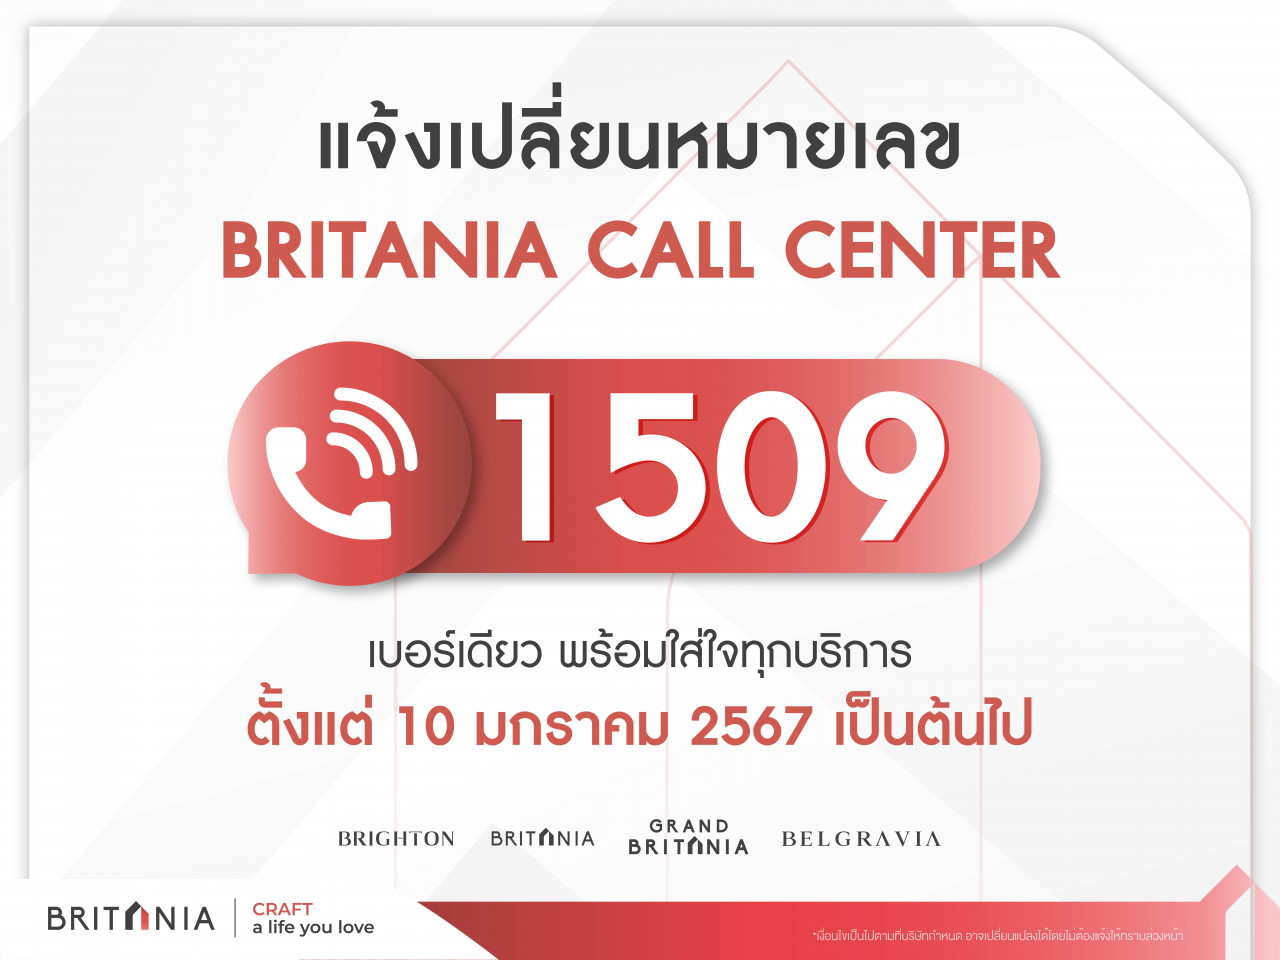 รูปบทความ บริทาเนีย แจ้งเปลี่ยนเบอร์ Britania Call Center “1509”